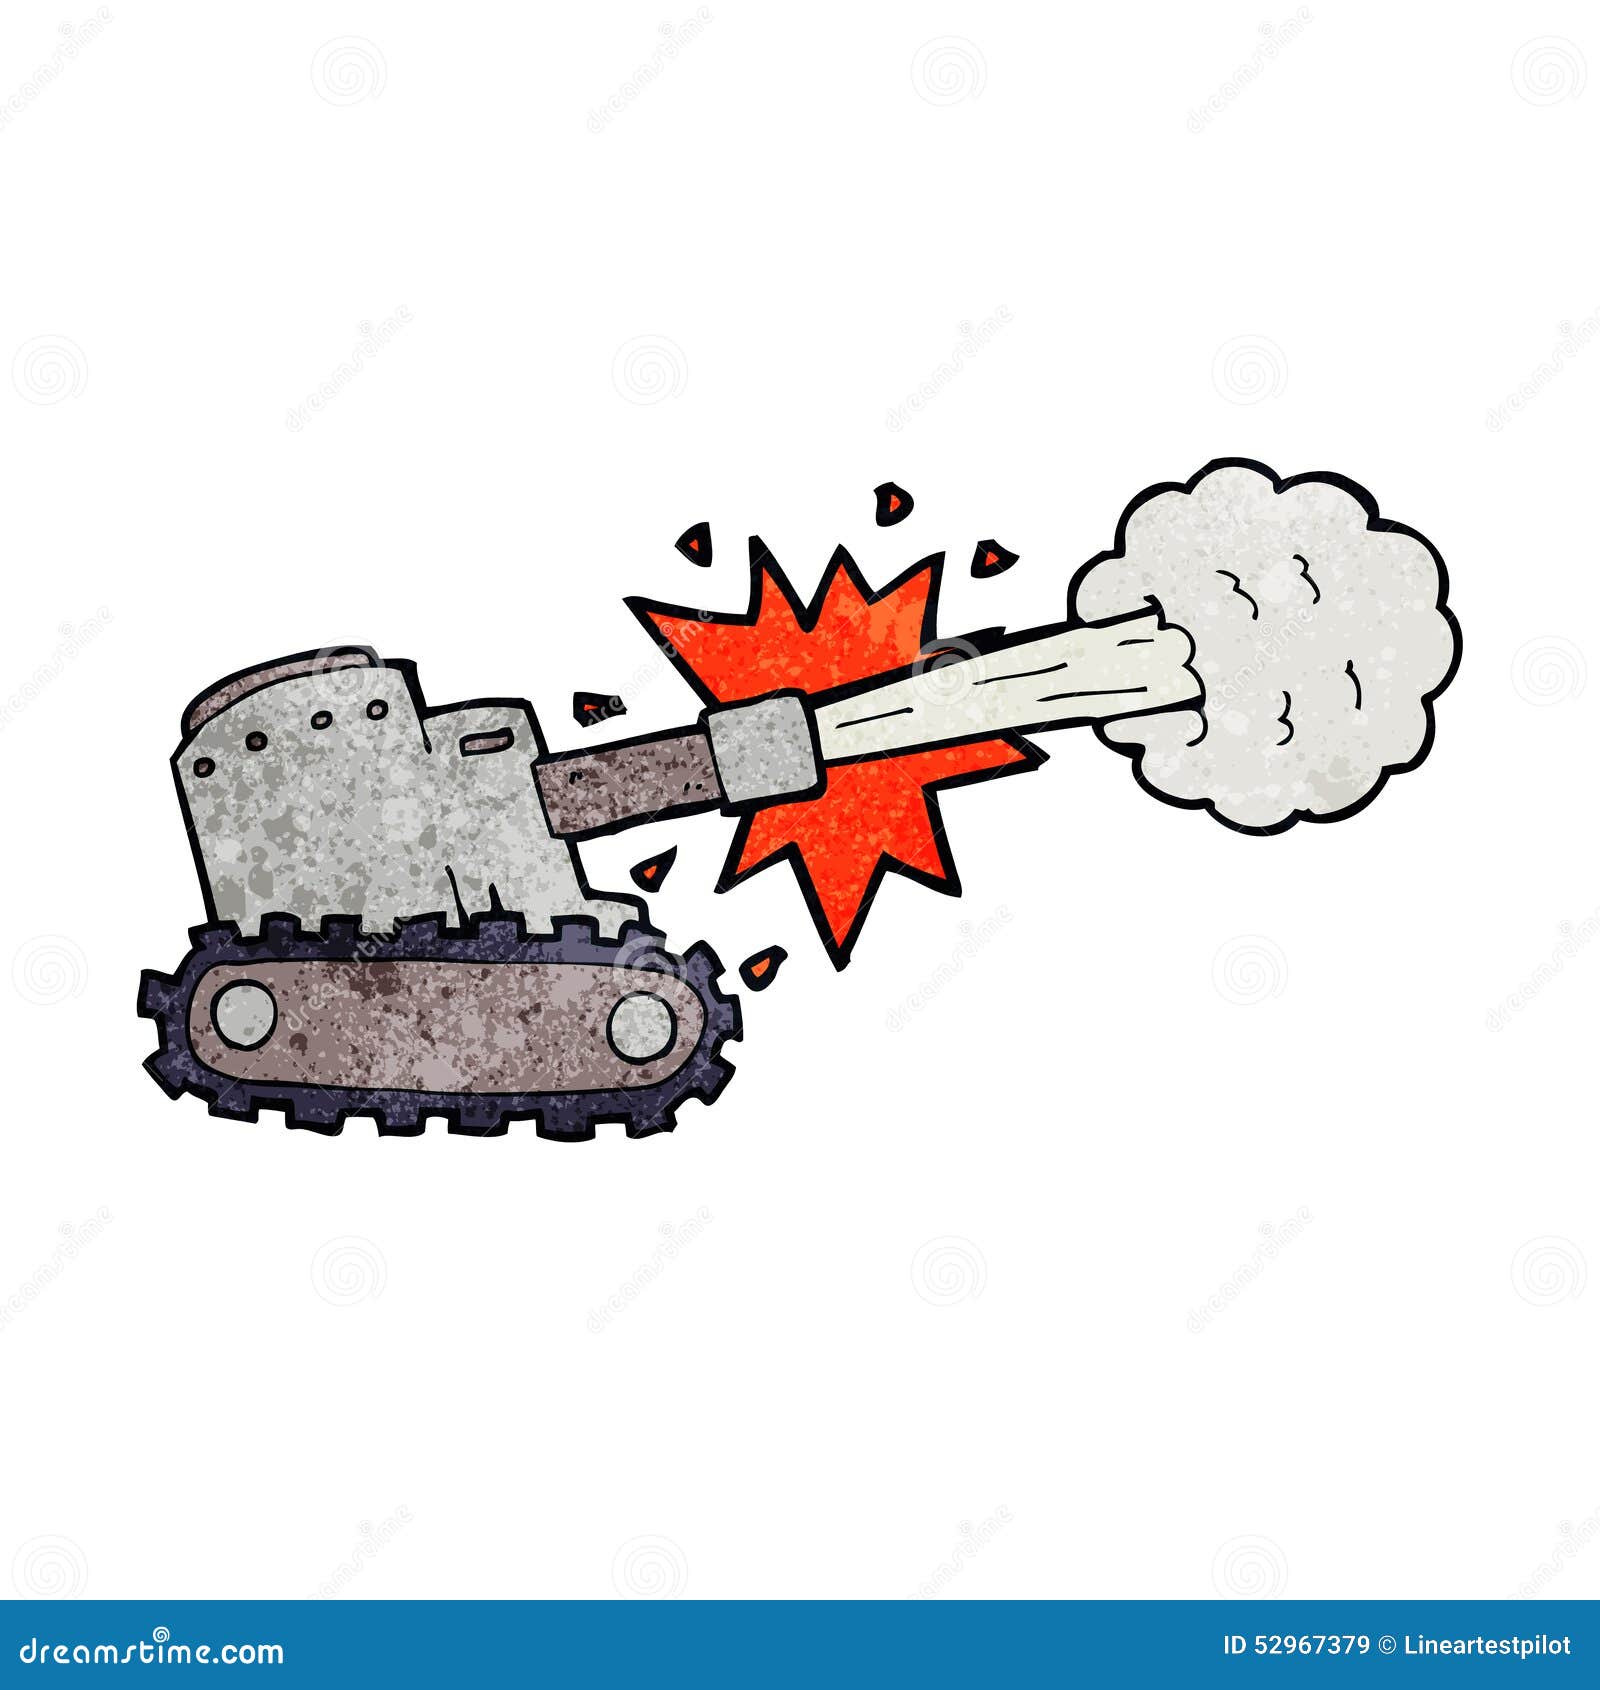 Cartoon firing tank stock illustration. Illustration of retro - 52967379